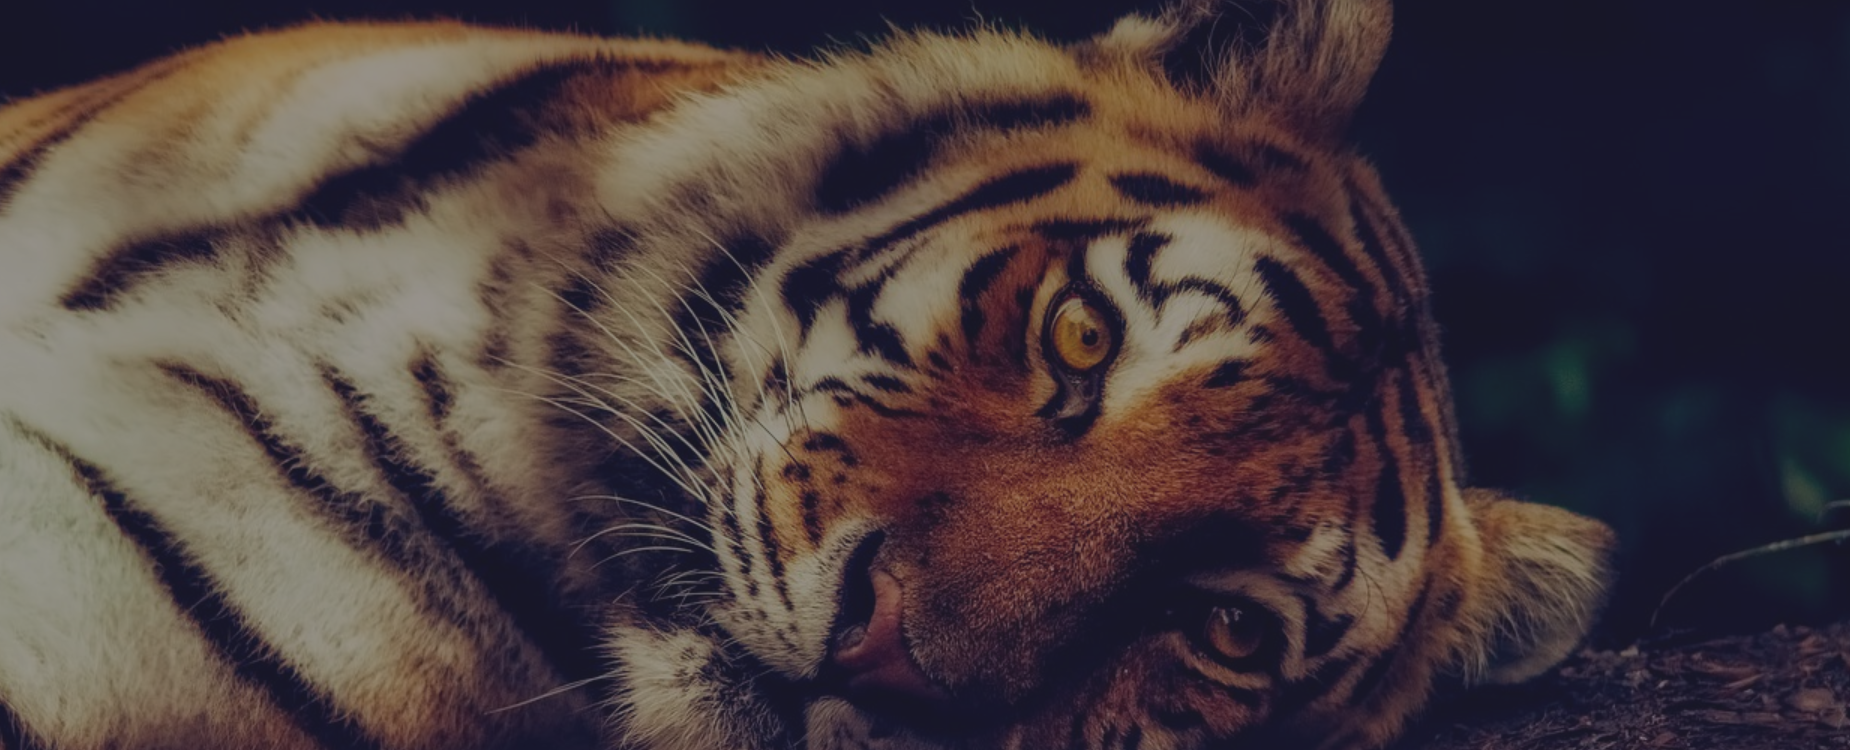 Banner image showing tiger